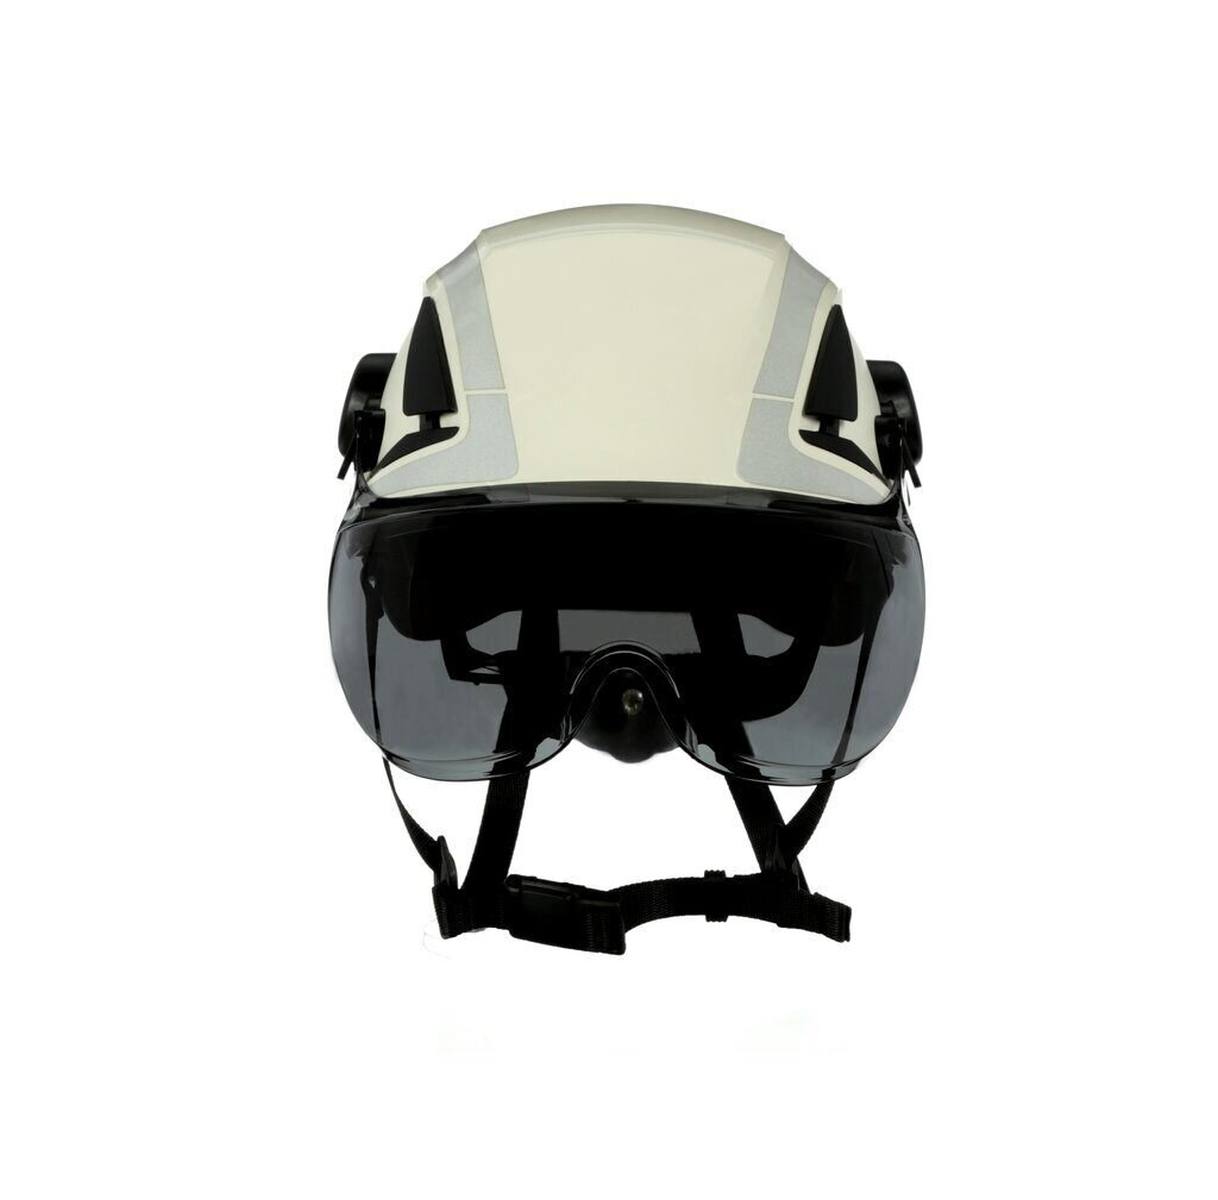 3M visera corta X5-SV02-CE para cascos de seguridad X5000 y X5500, gris, revestimiento antivaho y antirrayas, policarbonato